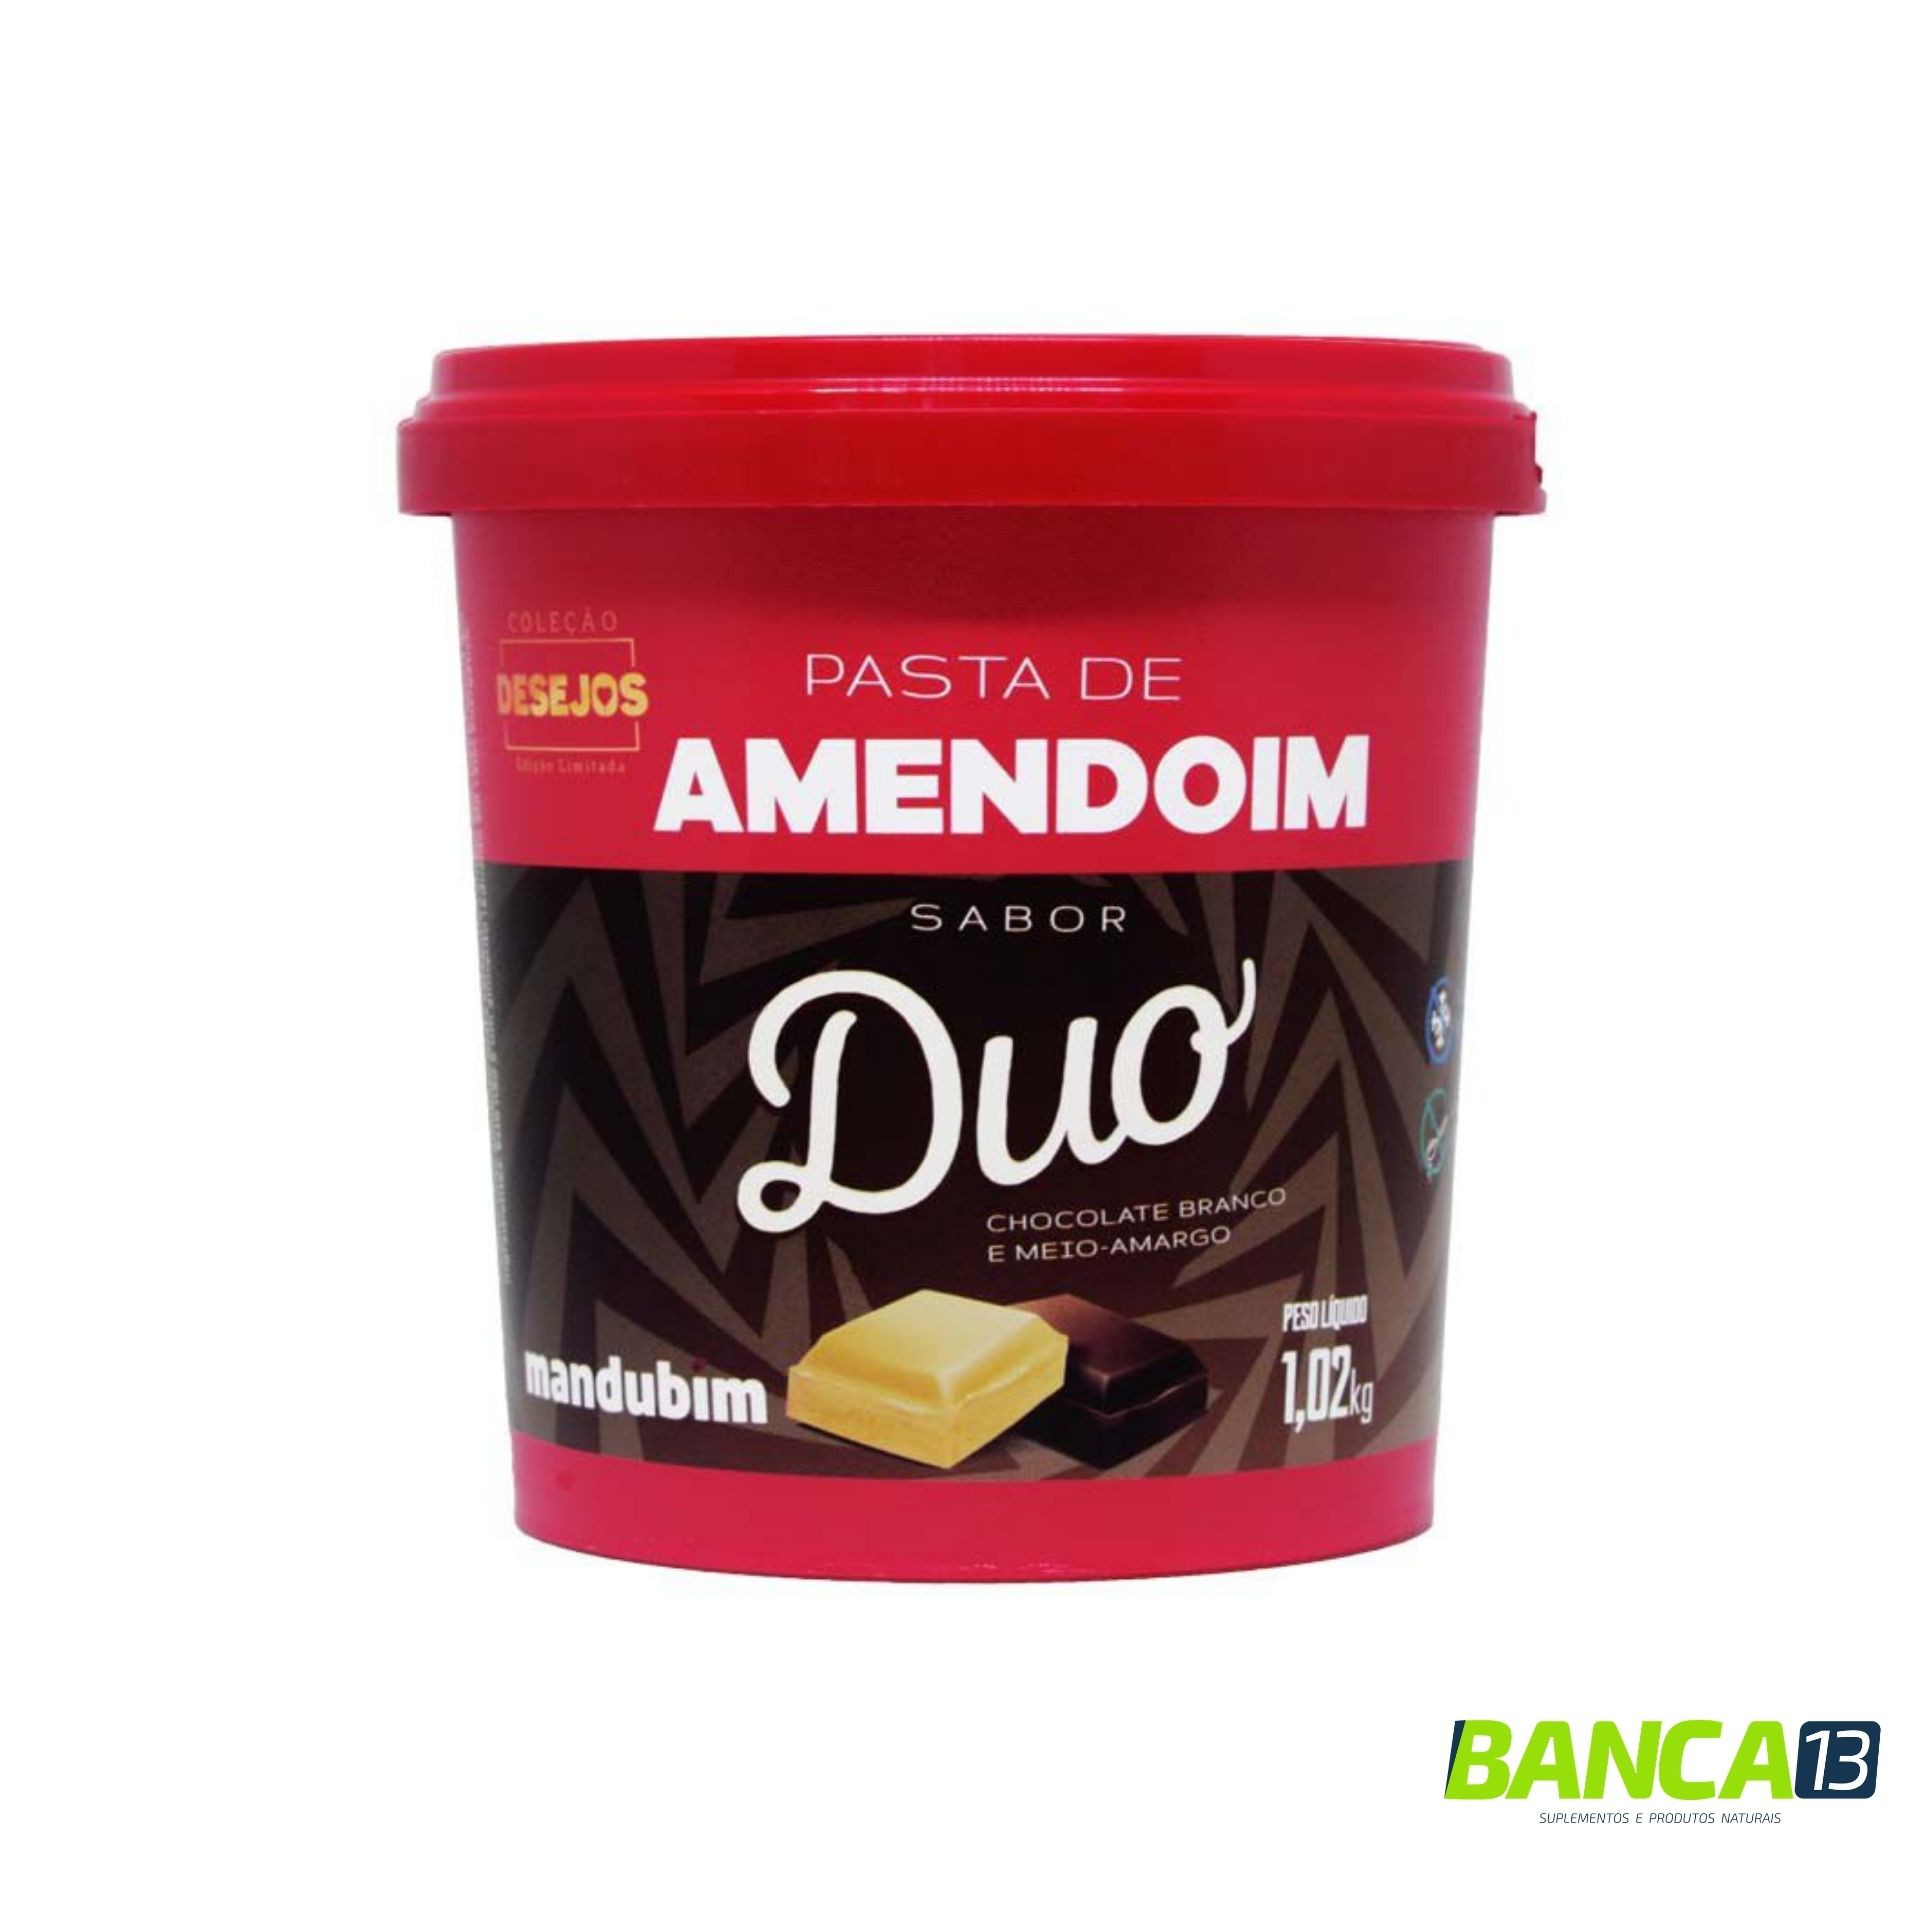 PASTA DE AMENDOIM DUO - CHOCOLATE BRANCO E MEIO-AMARGO - 1,02KG